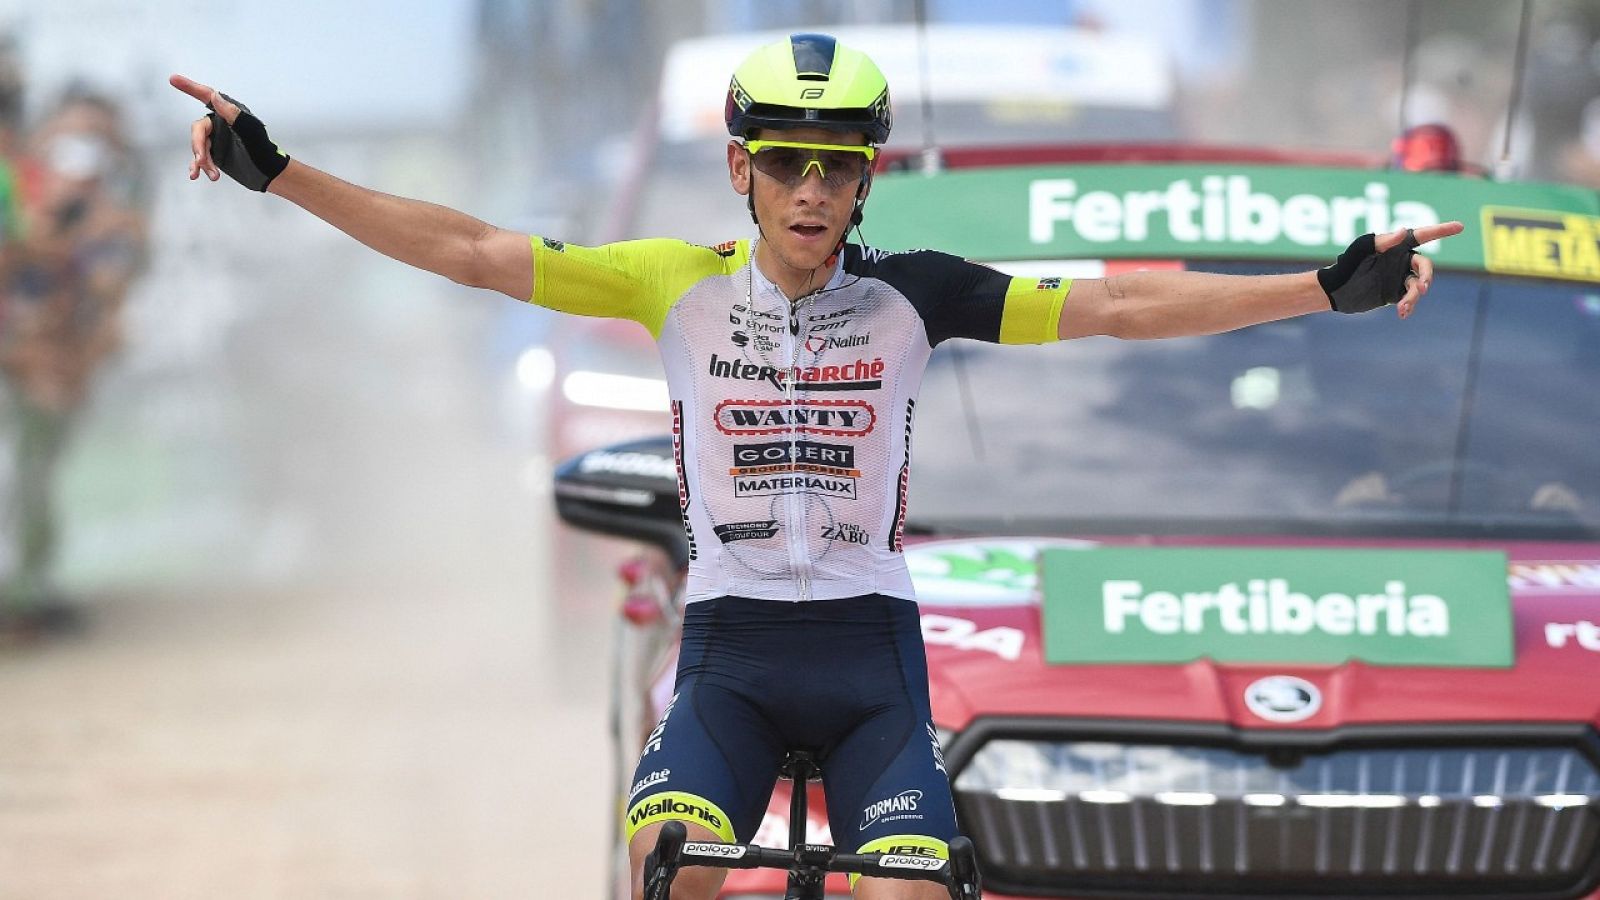 La Vuelta 2022: Final de la etapa 9. Villaviciosa - Les Praeres Nava - Ver ahora